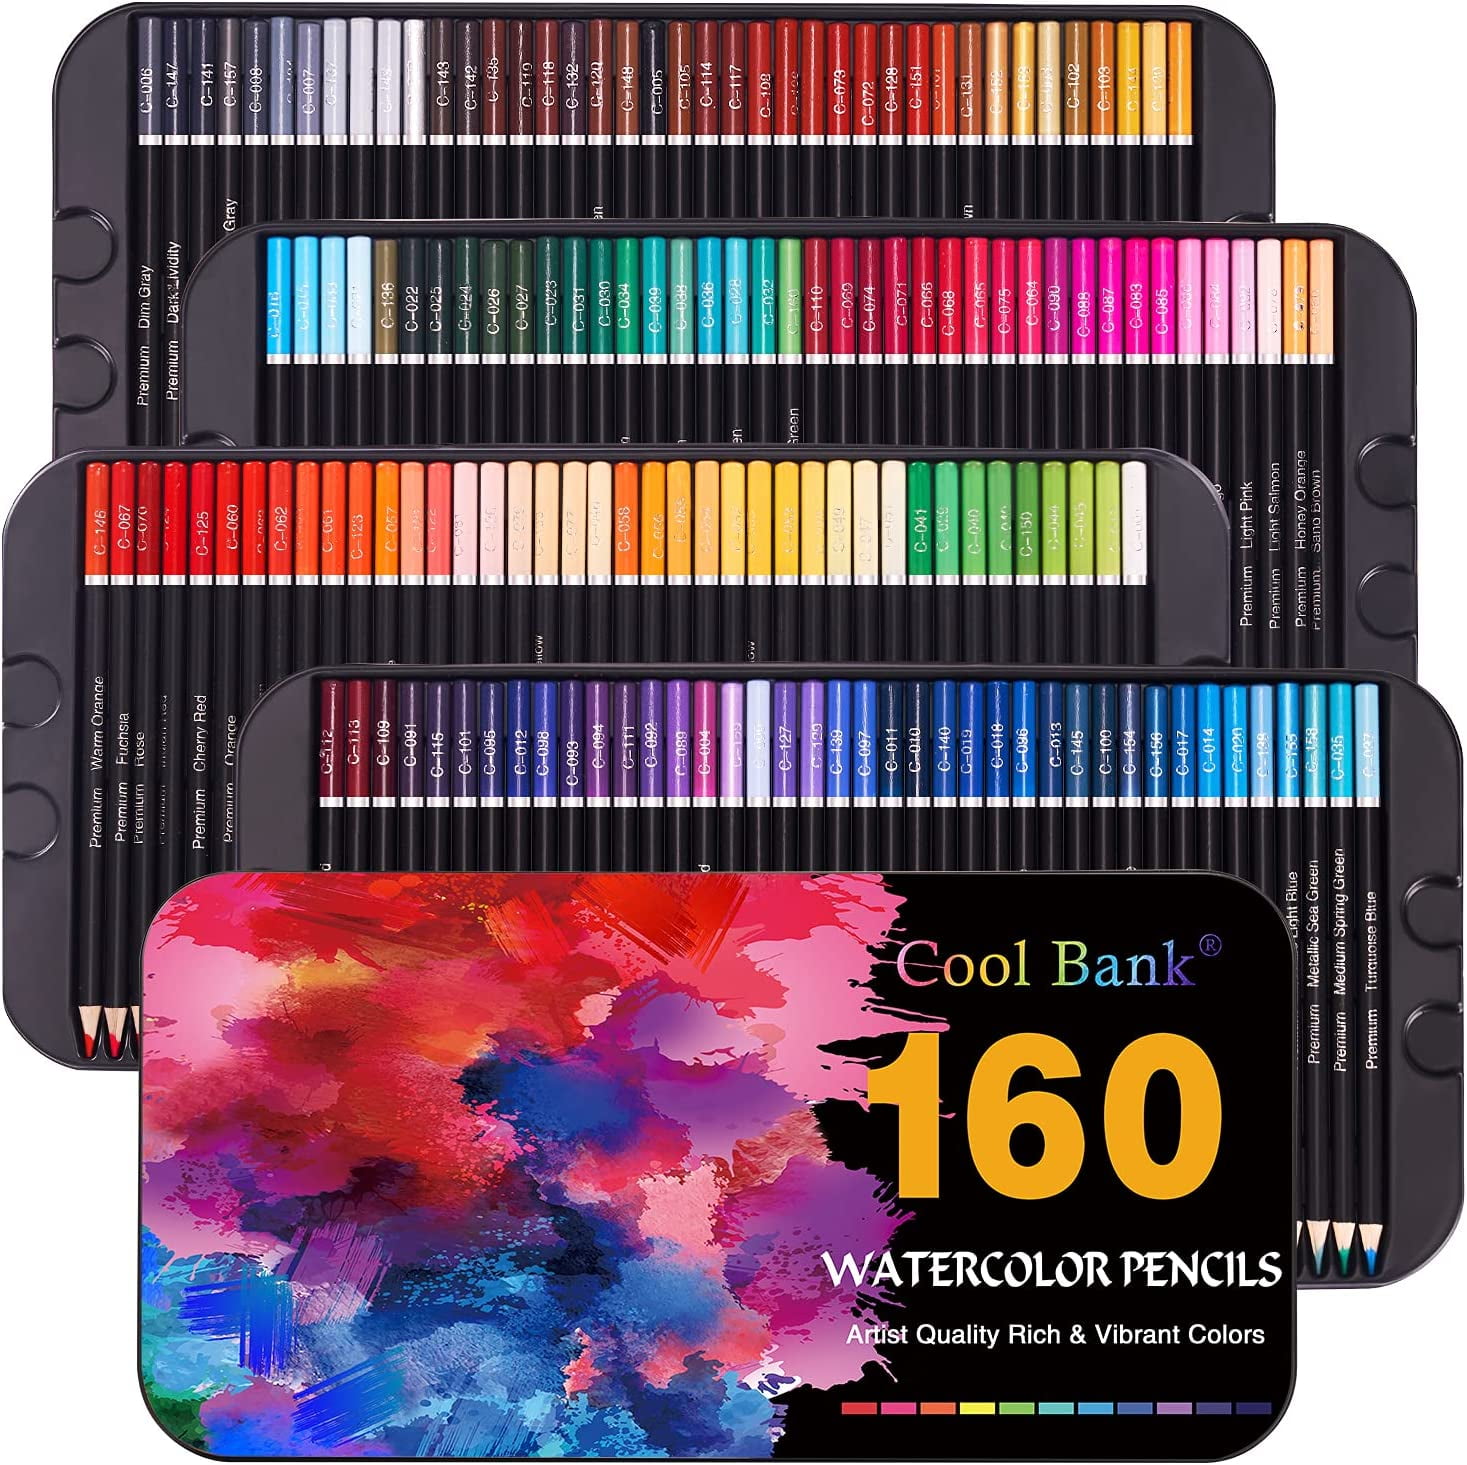 https://i5.walmartimages.com/seo/160-Watercolor-Pencils-Pencil-Set-Coloring-Books-Artist-Soft-Series-Lead-Vibrant-Colors-Sketching-Shading-Tin-Box_7980cdd6-2024-404a-9d31-eb27d33a6870.f85c82492c8648ccb5206579d891b997.jpeg